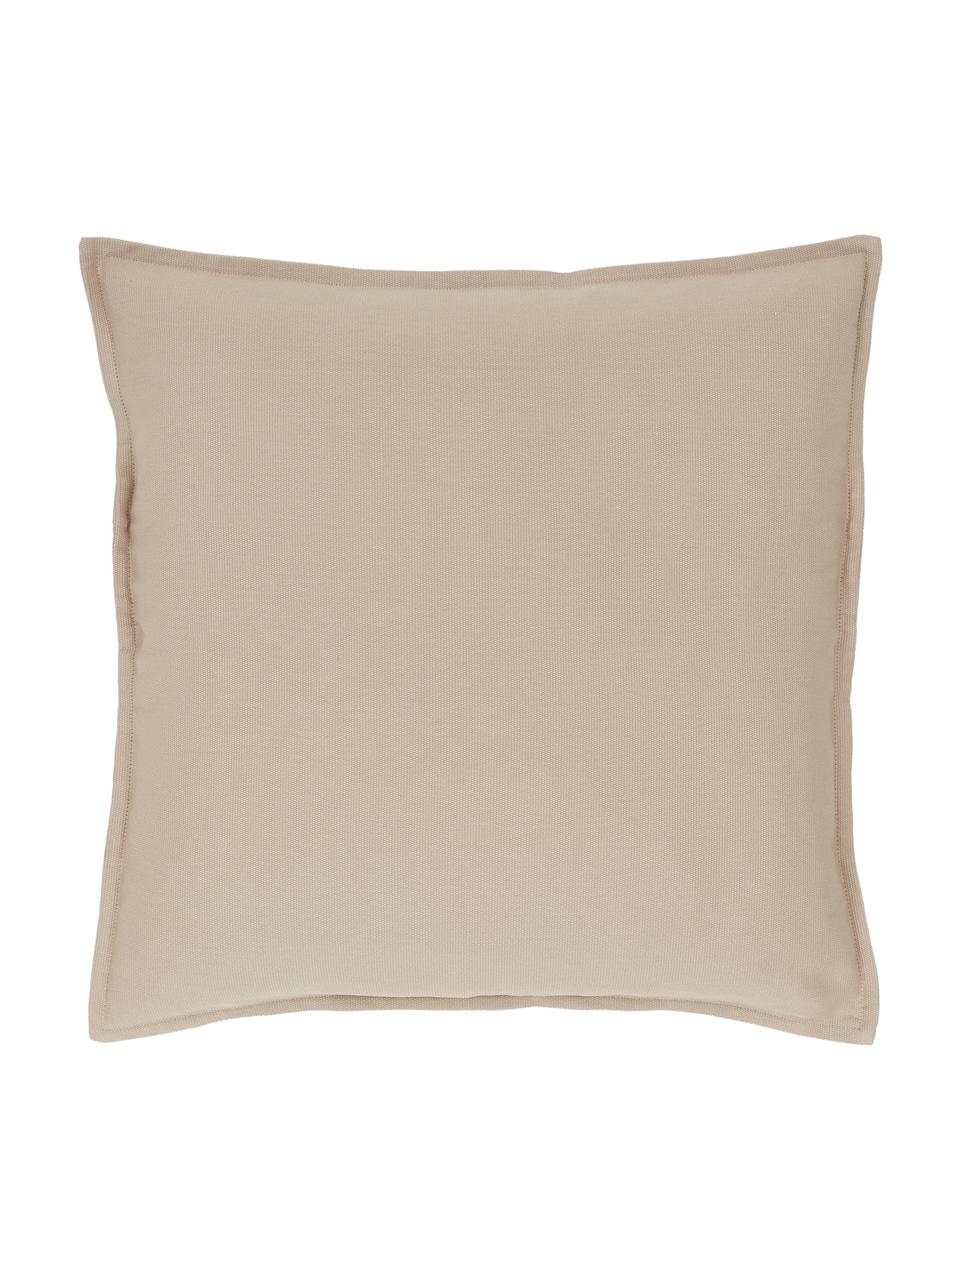 Poszewka na poduszkę z bawełny Mads, 100% bawełna, Beżowy, S 50 x D 50 cm